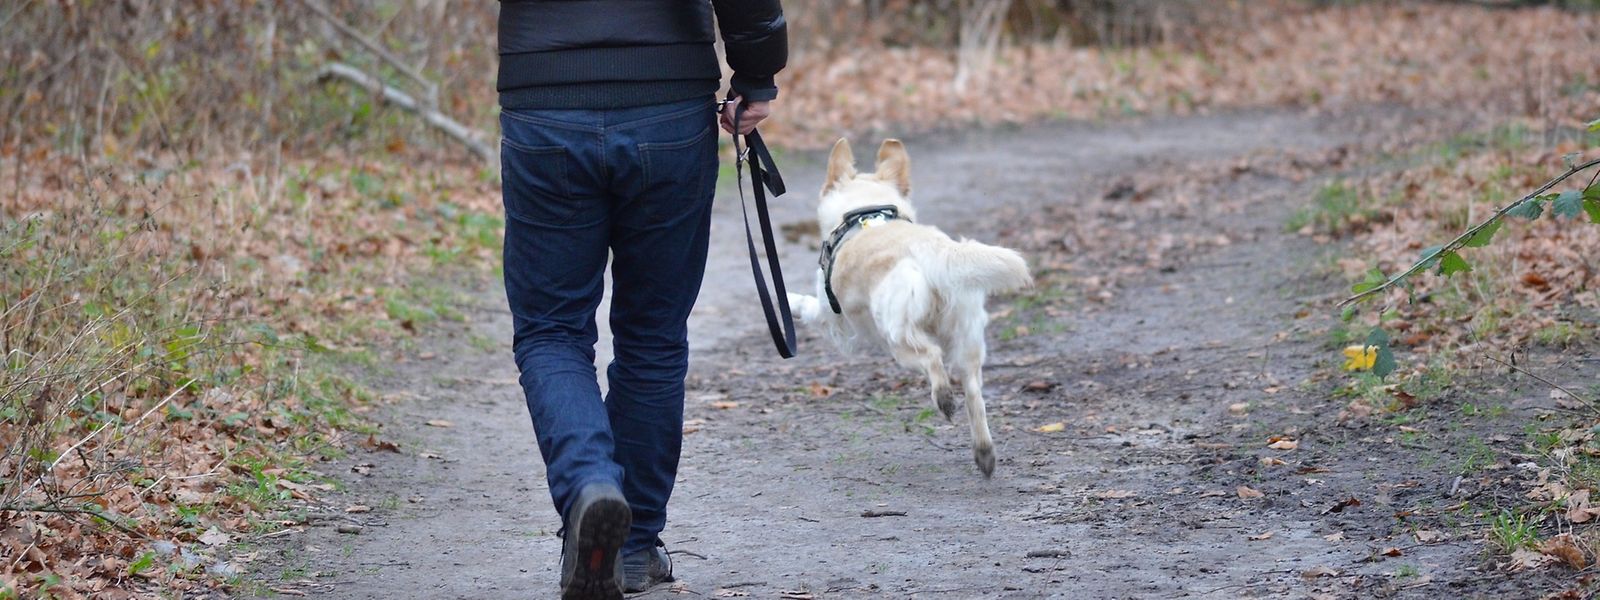 Si promener son chien reste autorisé, des précautions doivent toutefois être prises.